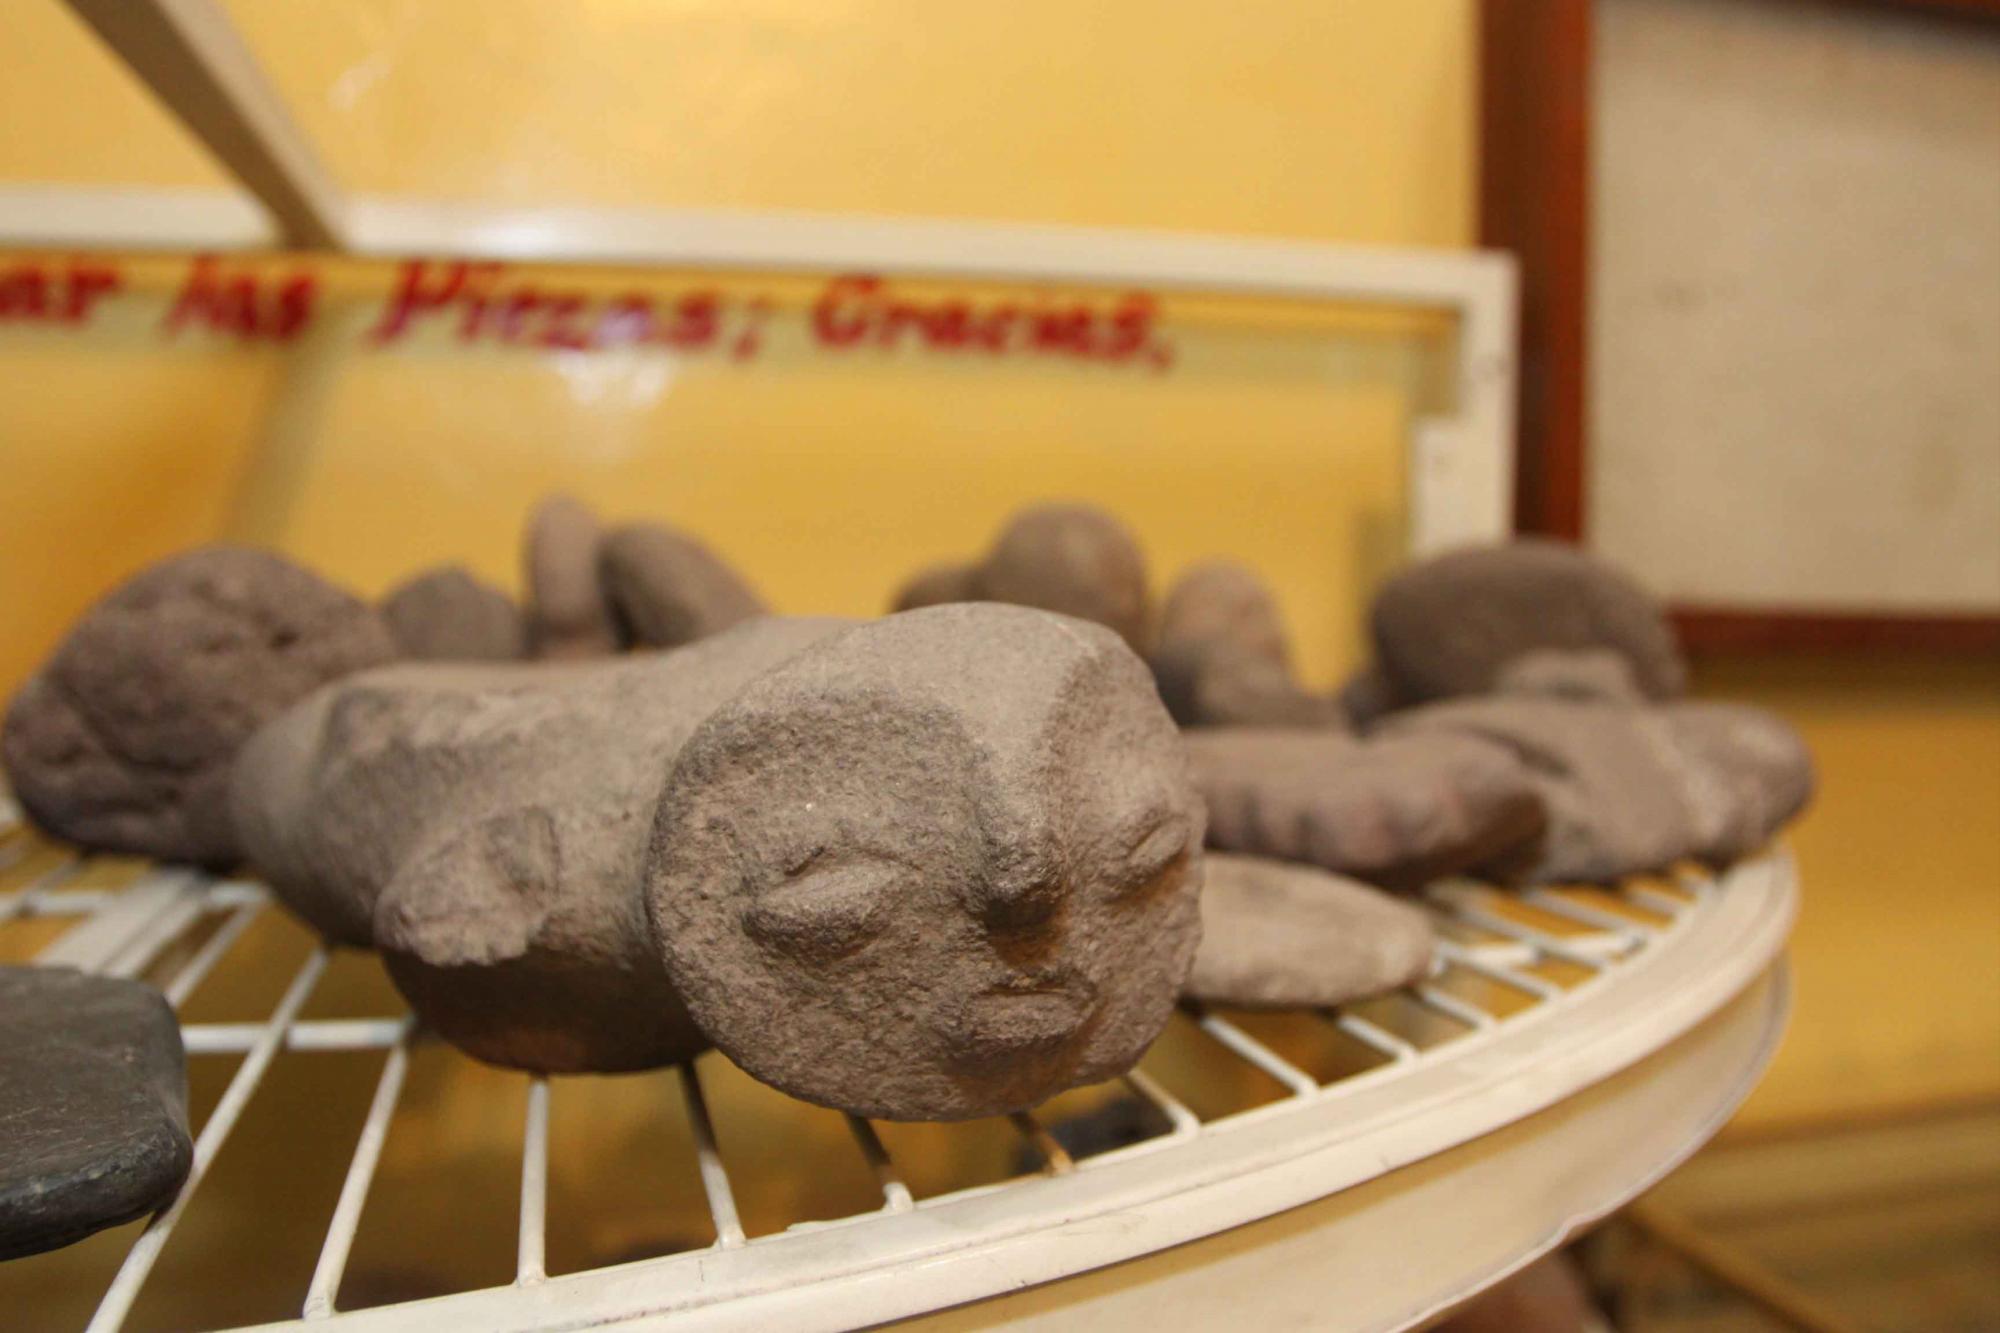 $!Pierde Culiacán a ‘El Chino Billetero’, coleccionista de piezas arqueológicas